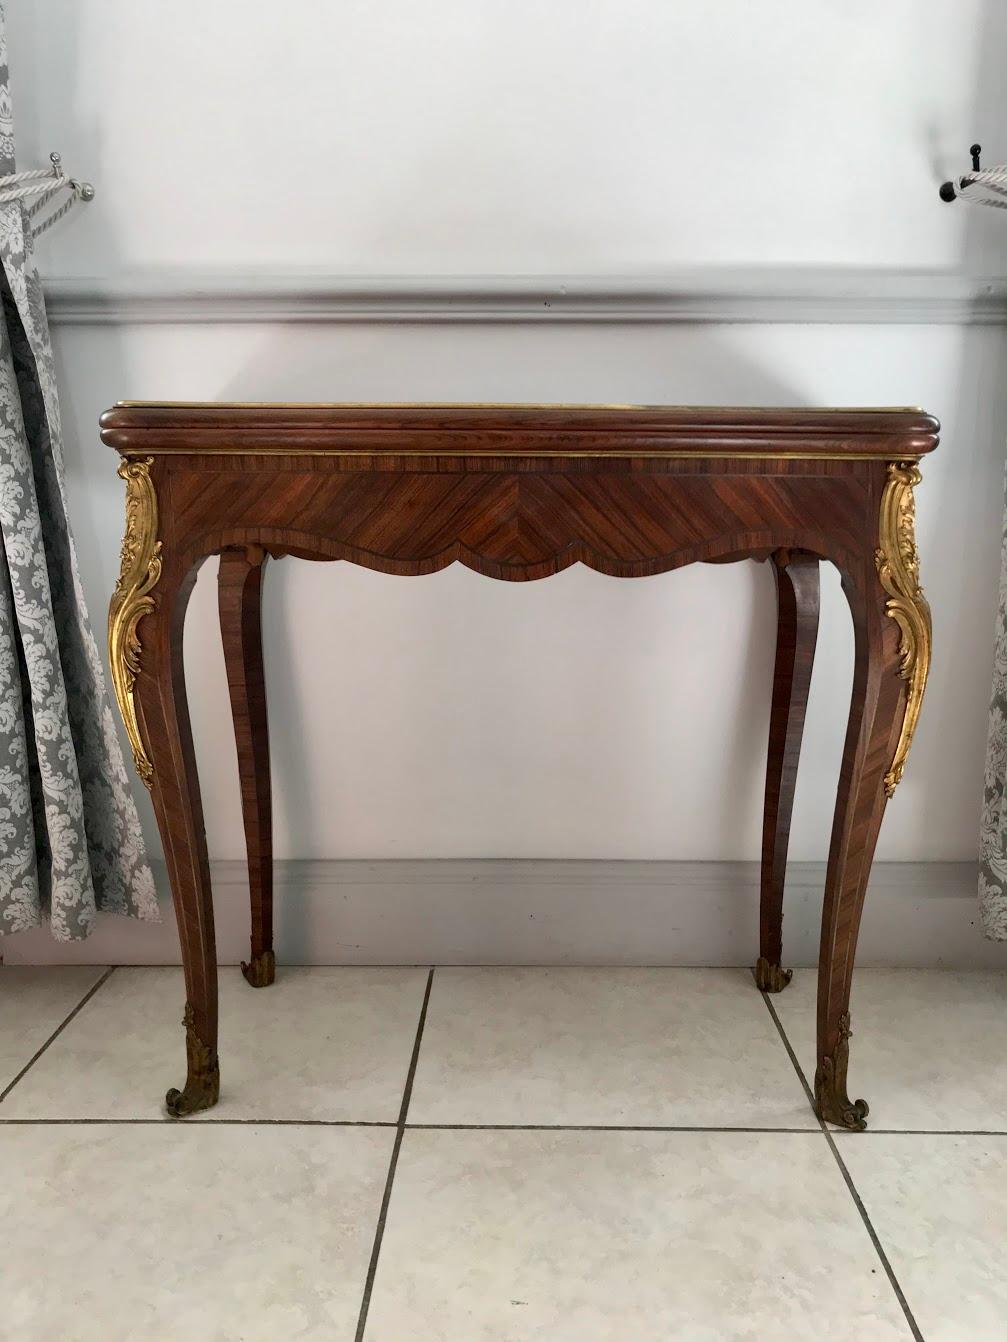 Schöne Konsole, die sich zu einem Spieltisch aus dem 19. Jahrhundert aufklappen lässt. 
Dieses schöne Möbelstück ist im Stil Louis XV, es hat 4 geschwungene Beine. Sie ist vollständig aus Intarsien gefertigt. Diese Beine sind mit Messingstürzen mit